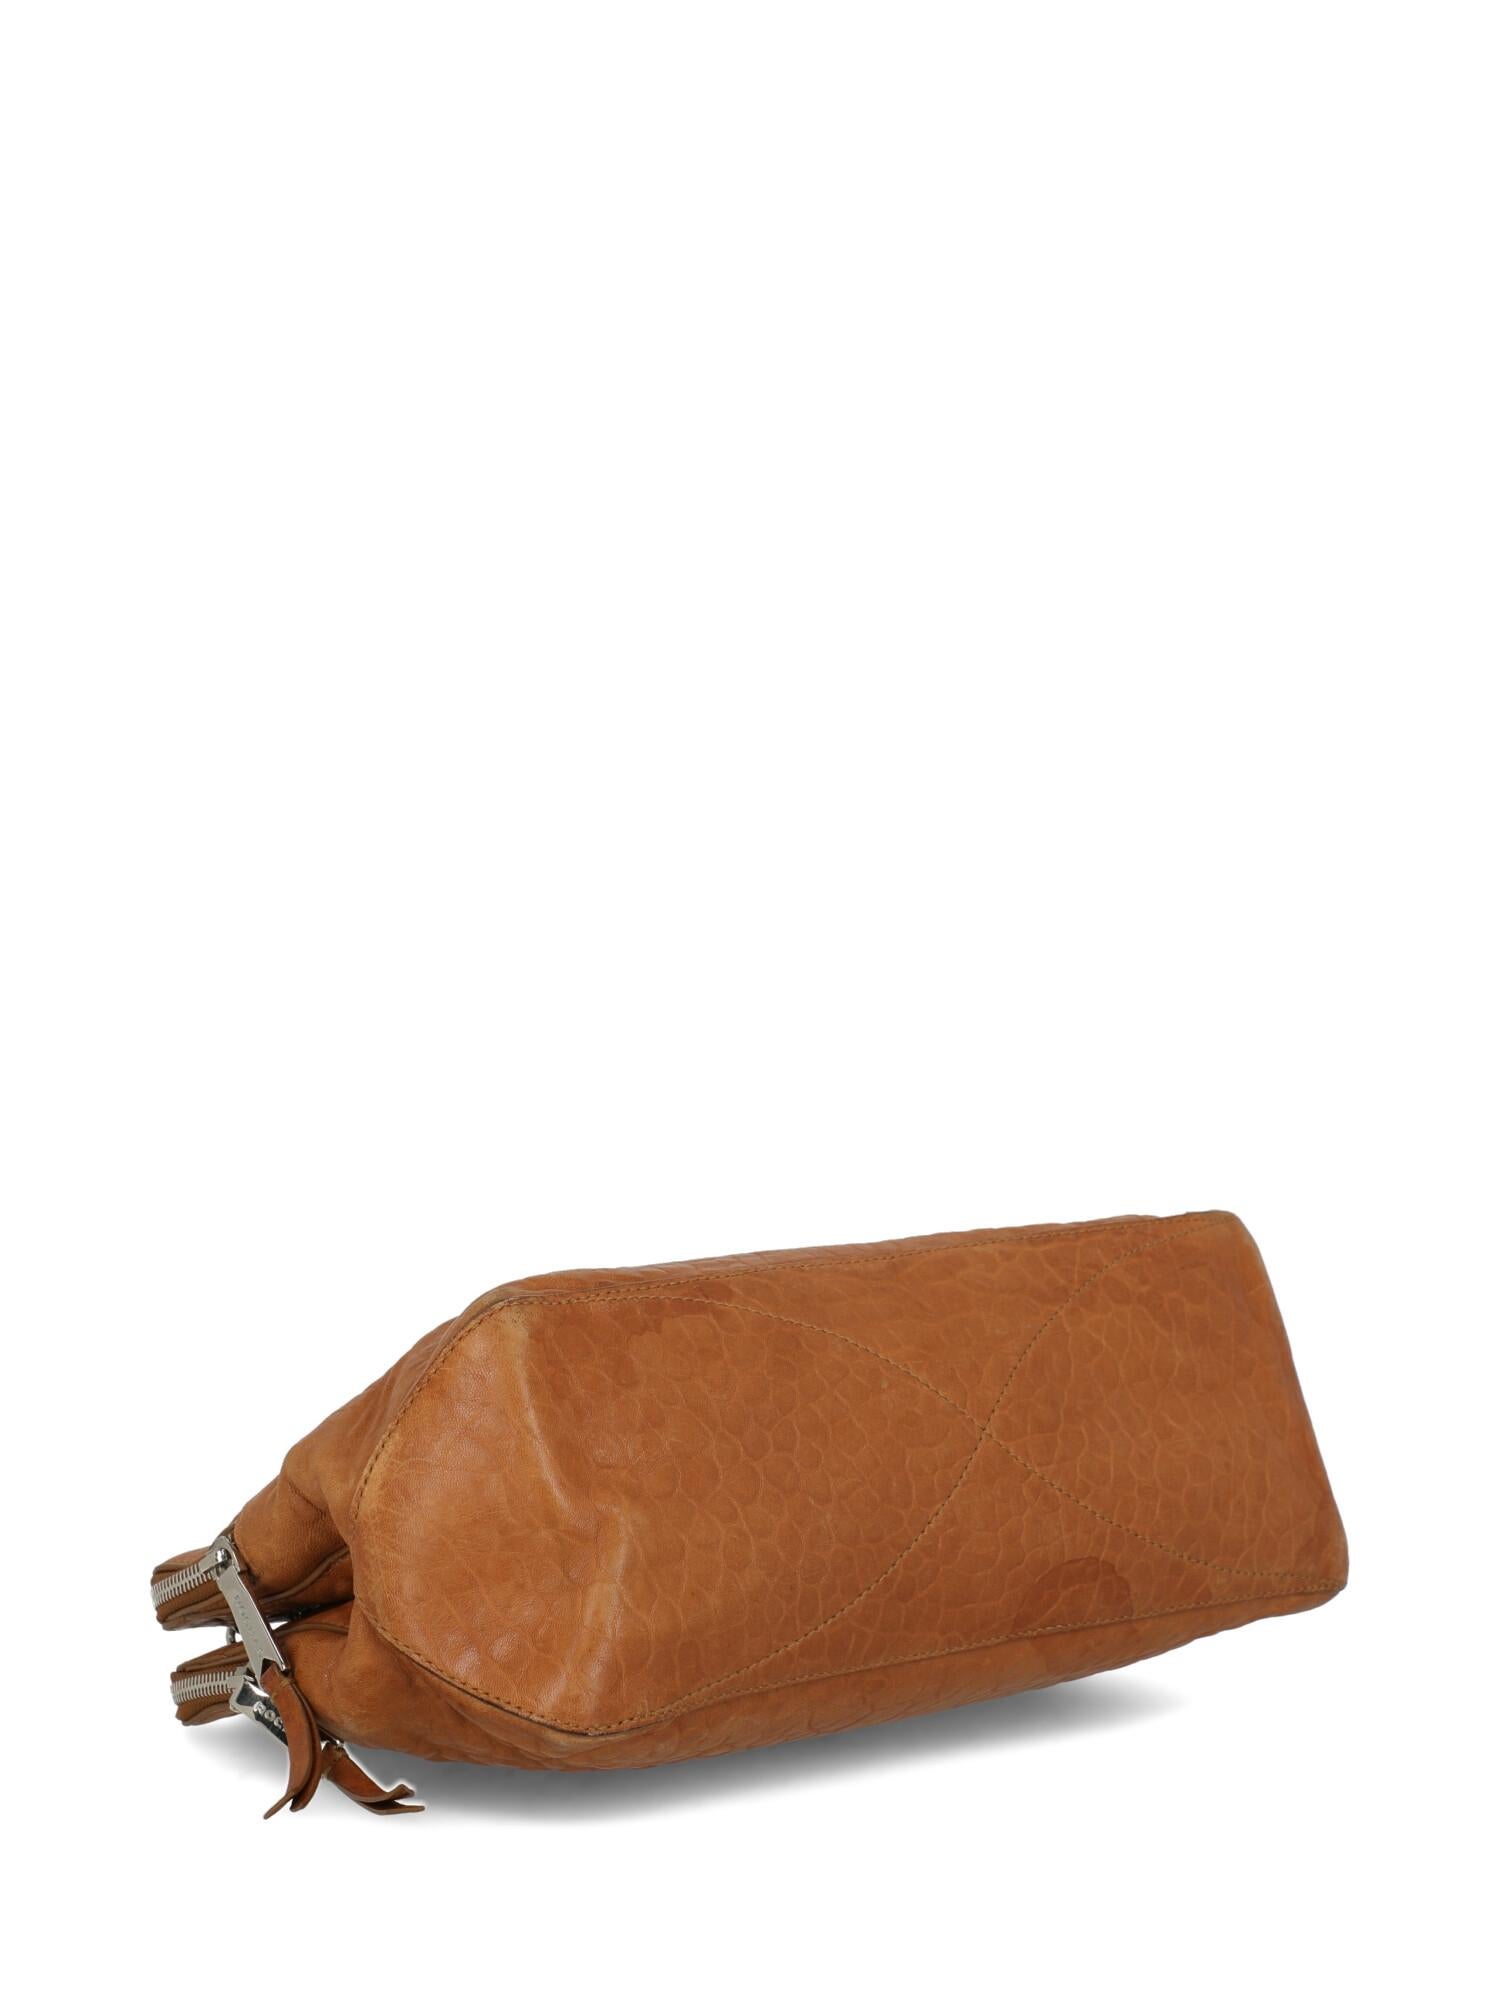 Women's Rochas Woman Shoulder bag Camel Color Leather For Sale